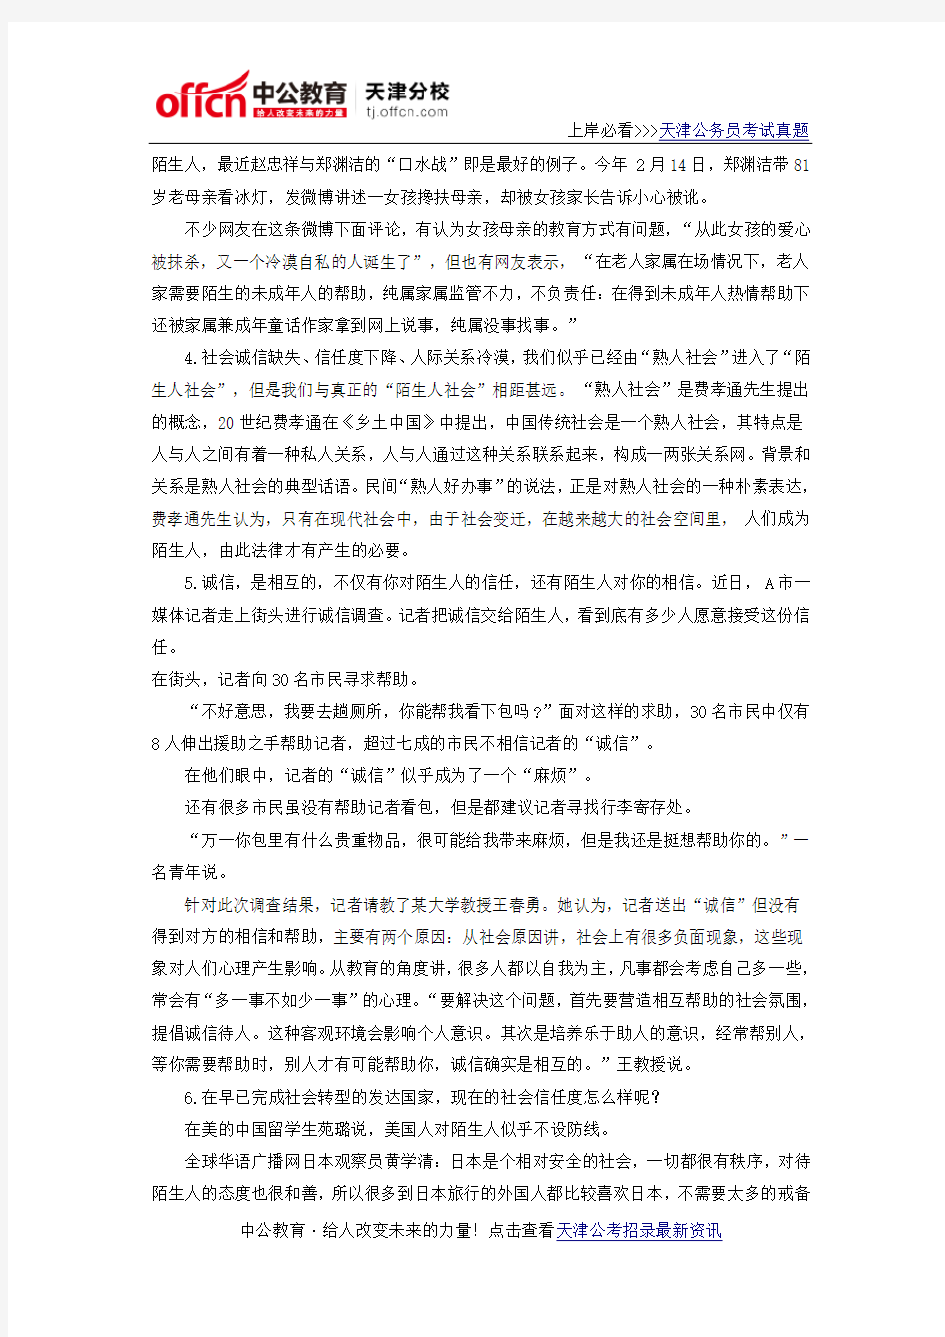 2013年天津公务员考试申论真题及答案